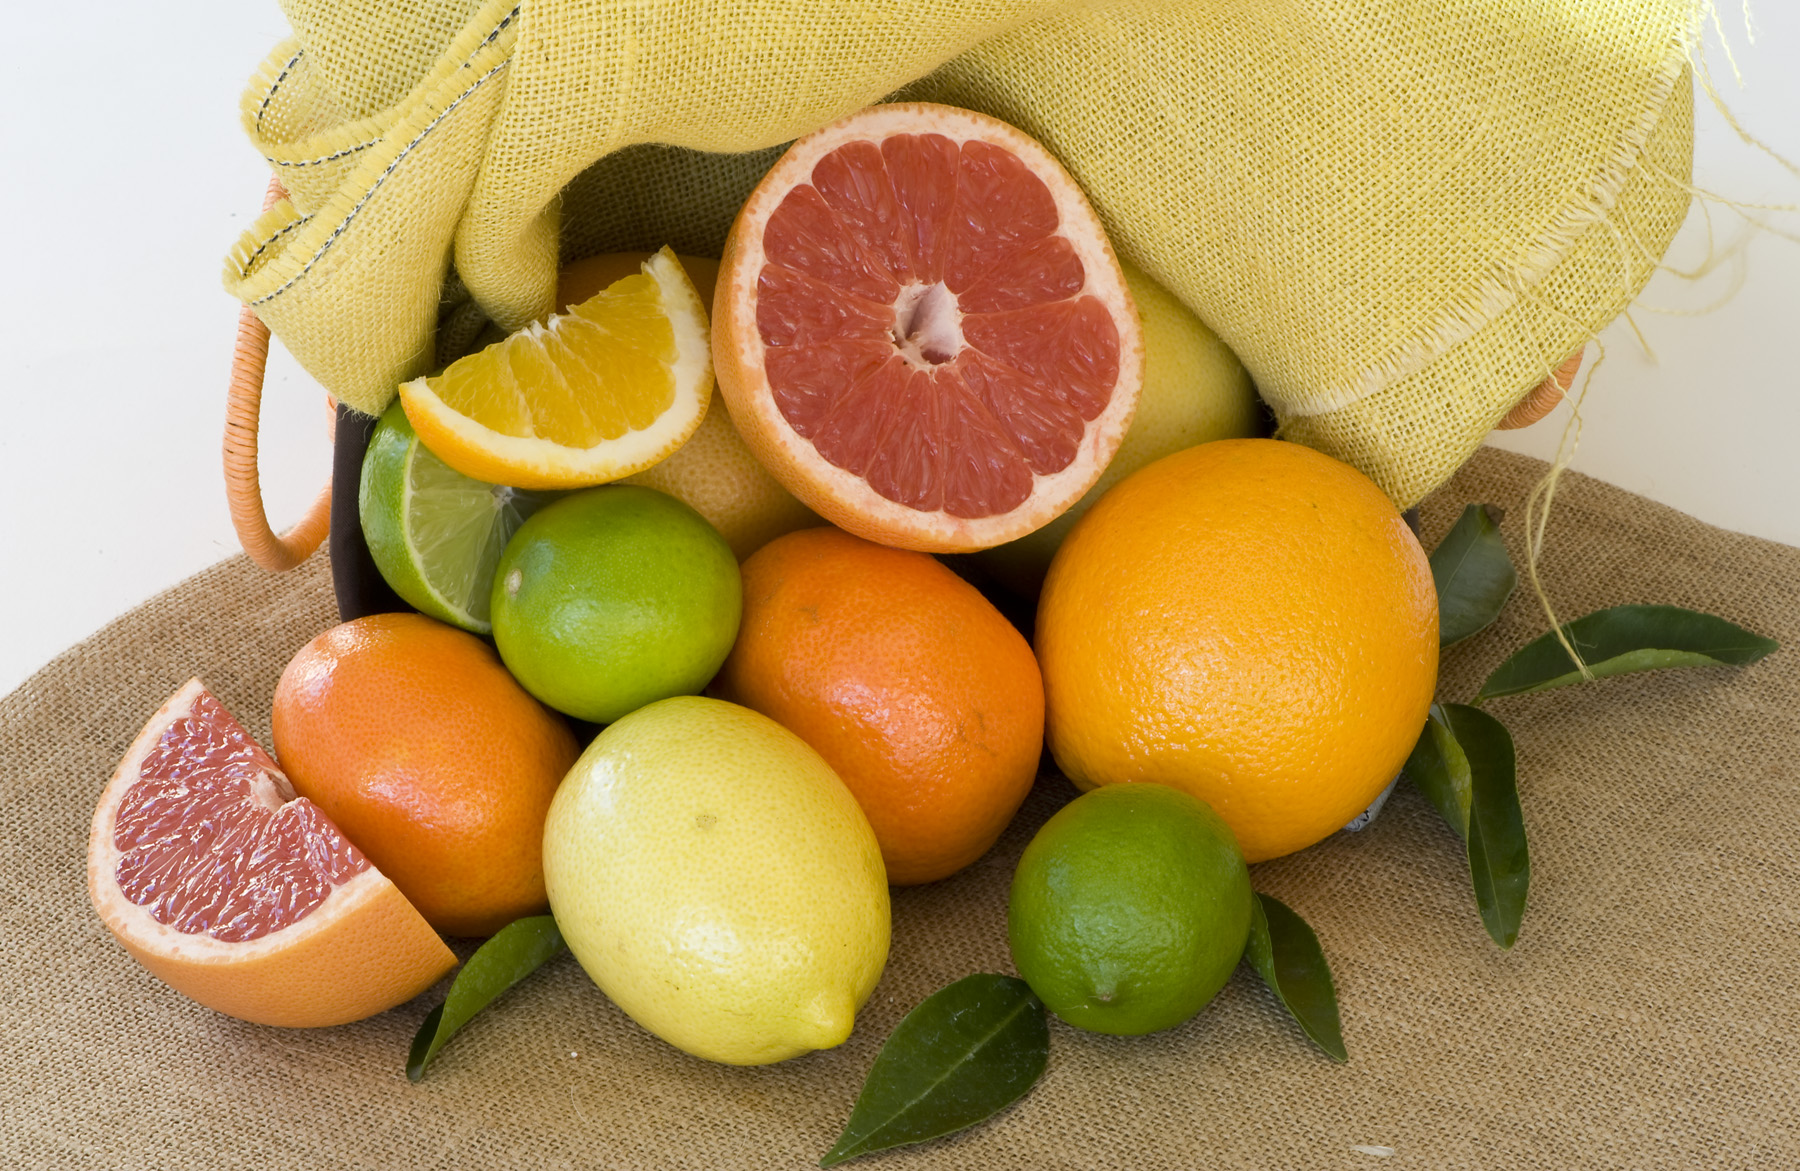 Цитрус фрукты. Апельсин и лимон. Цитрусовые представители. Цитрусовые фрукты цитрусовые овощи. Цитрусовые фрукты это